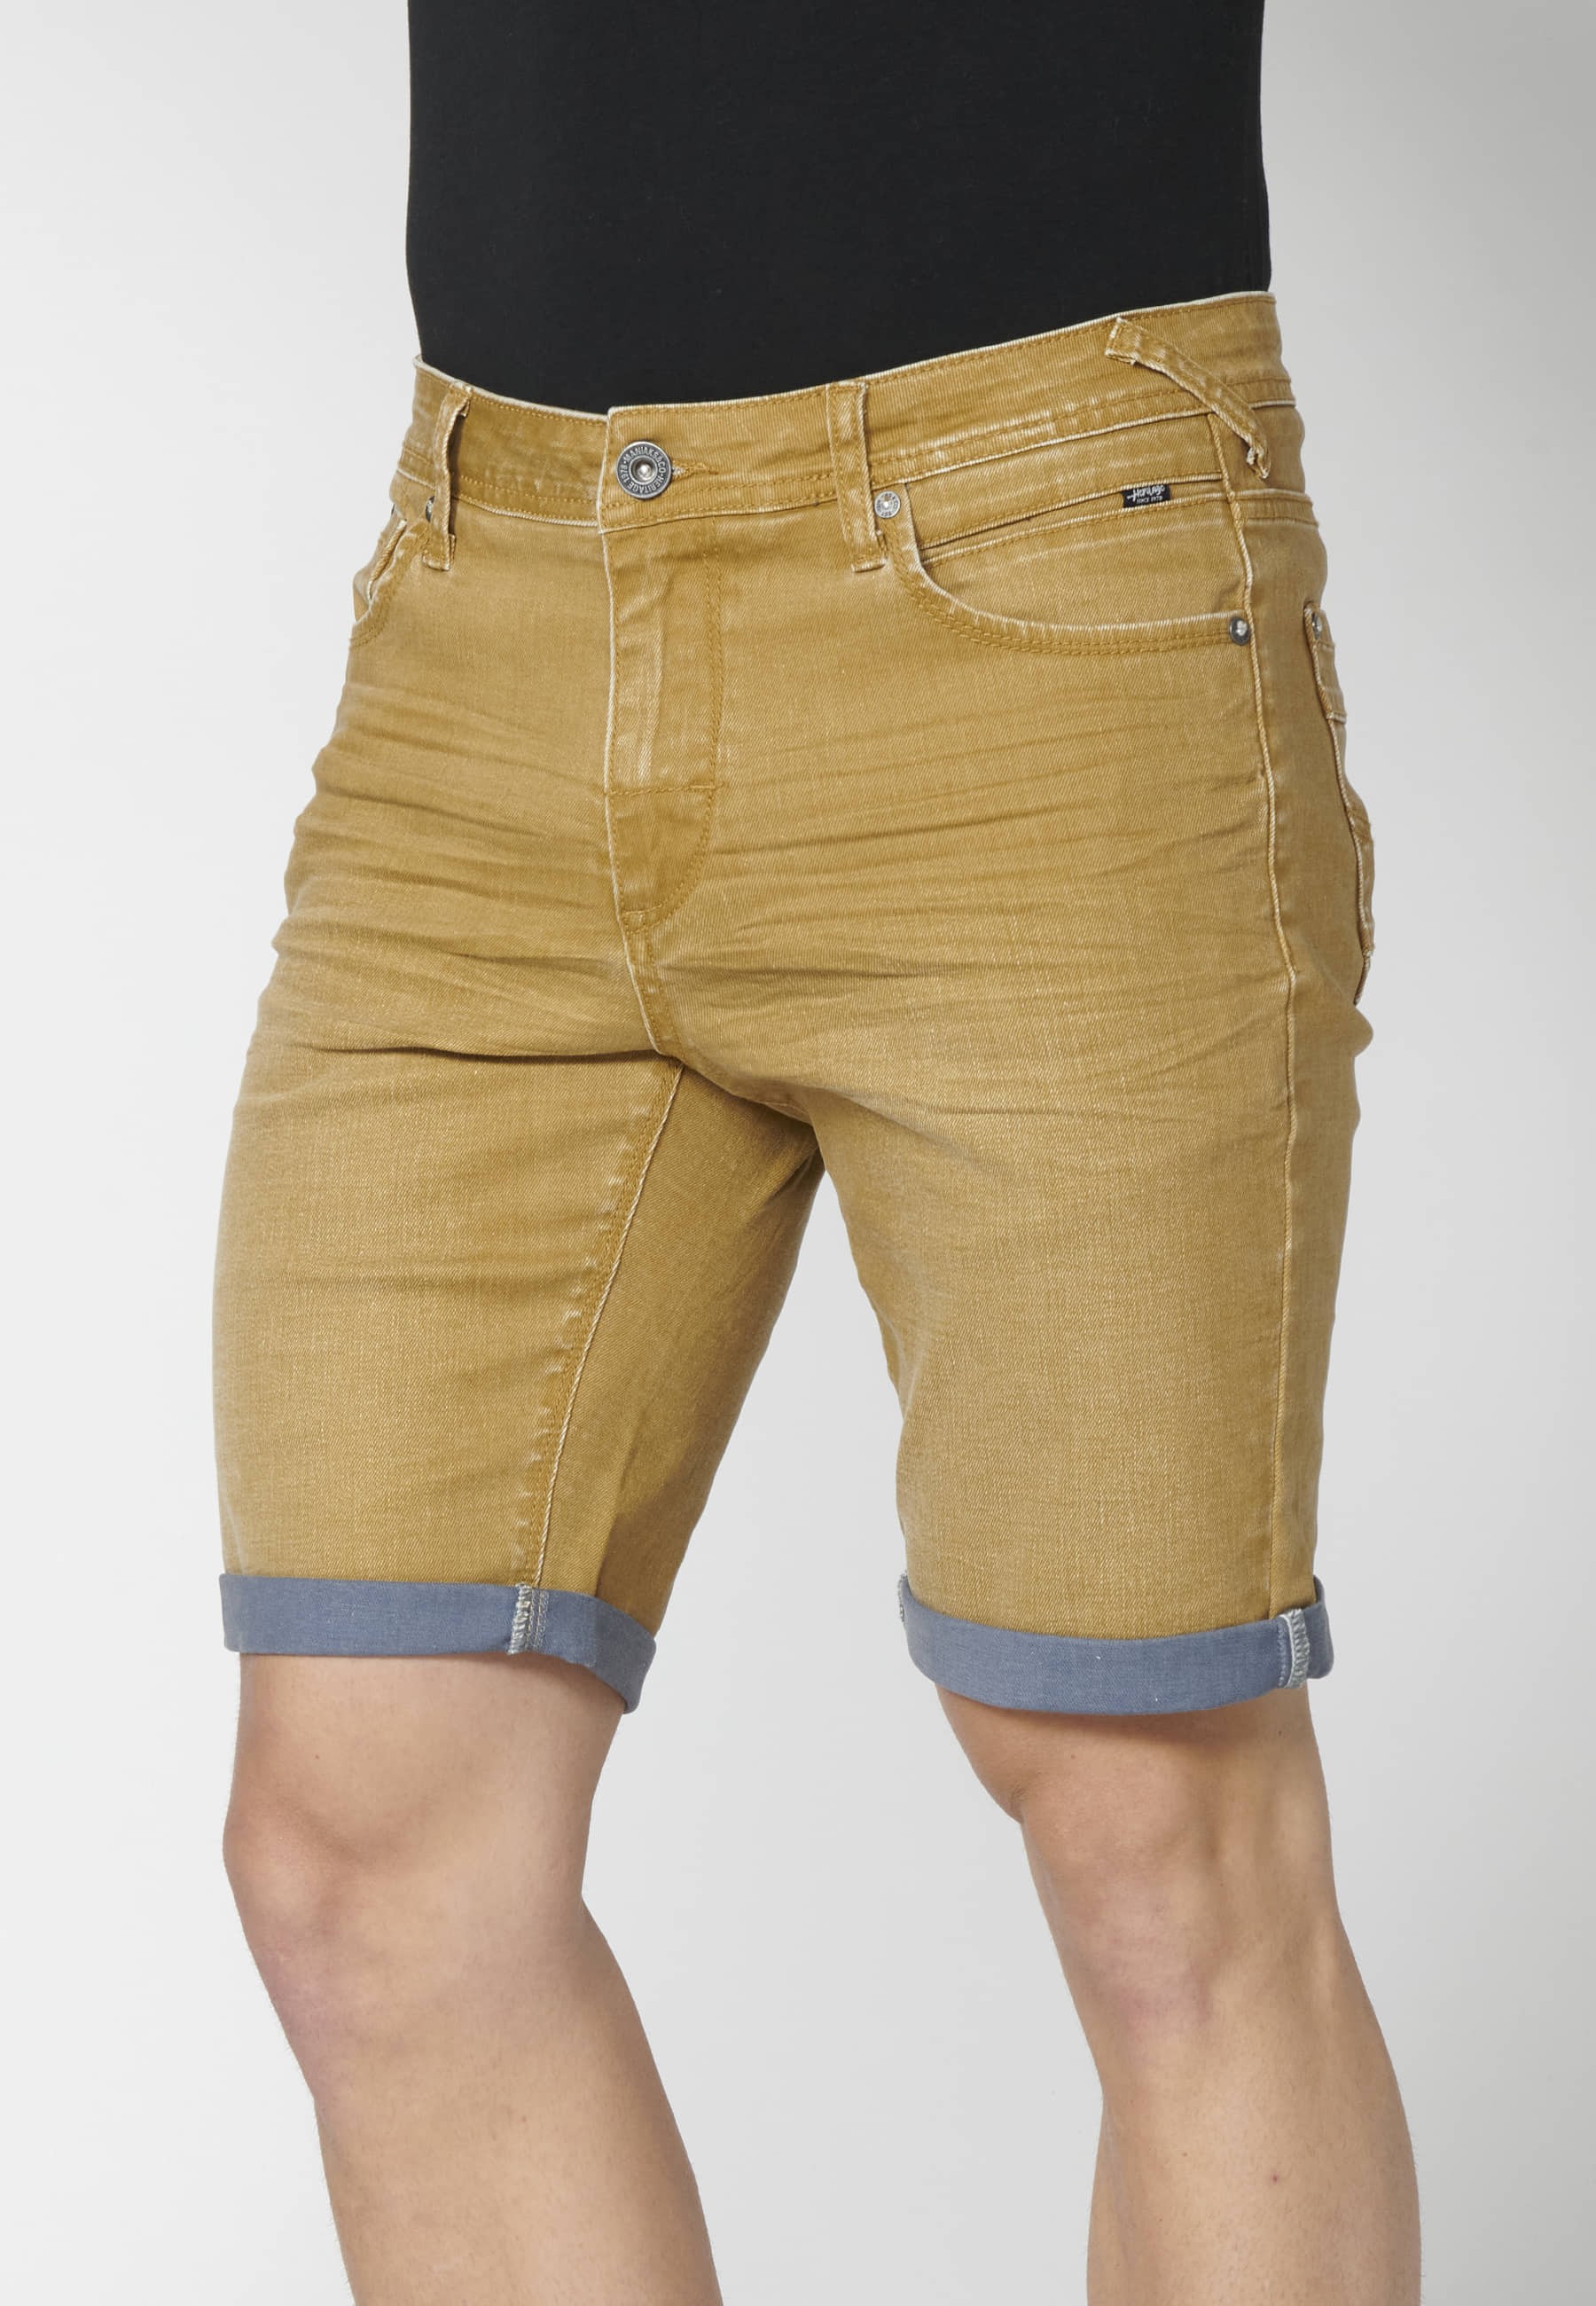 Pantalón corto Bermuda Vaquera Stretch regular Color Ocre para Hombre